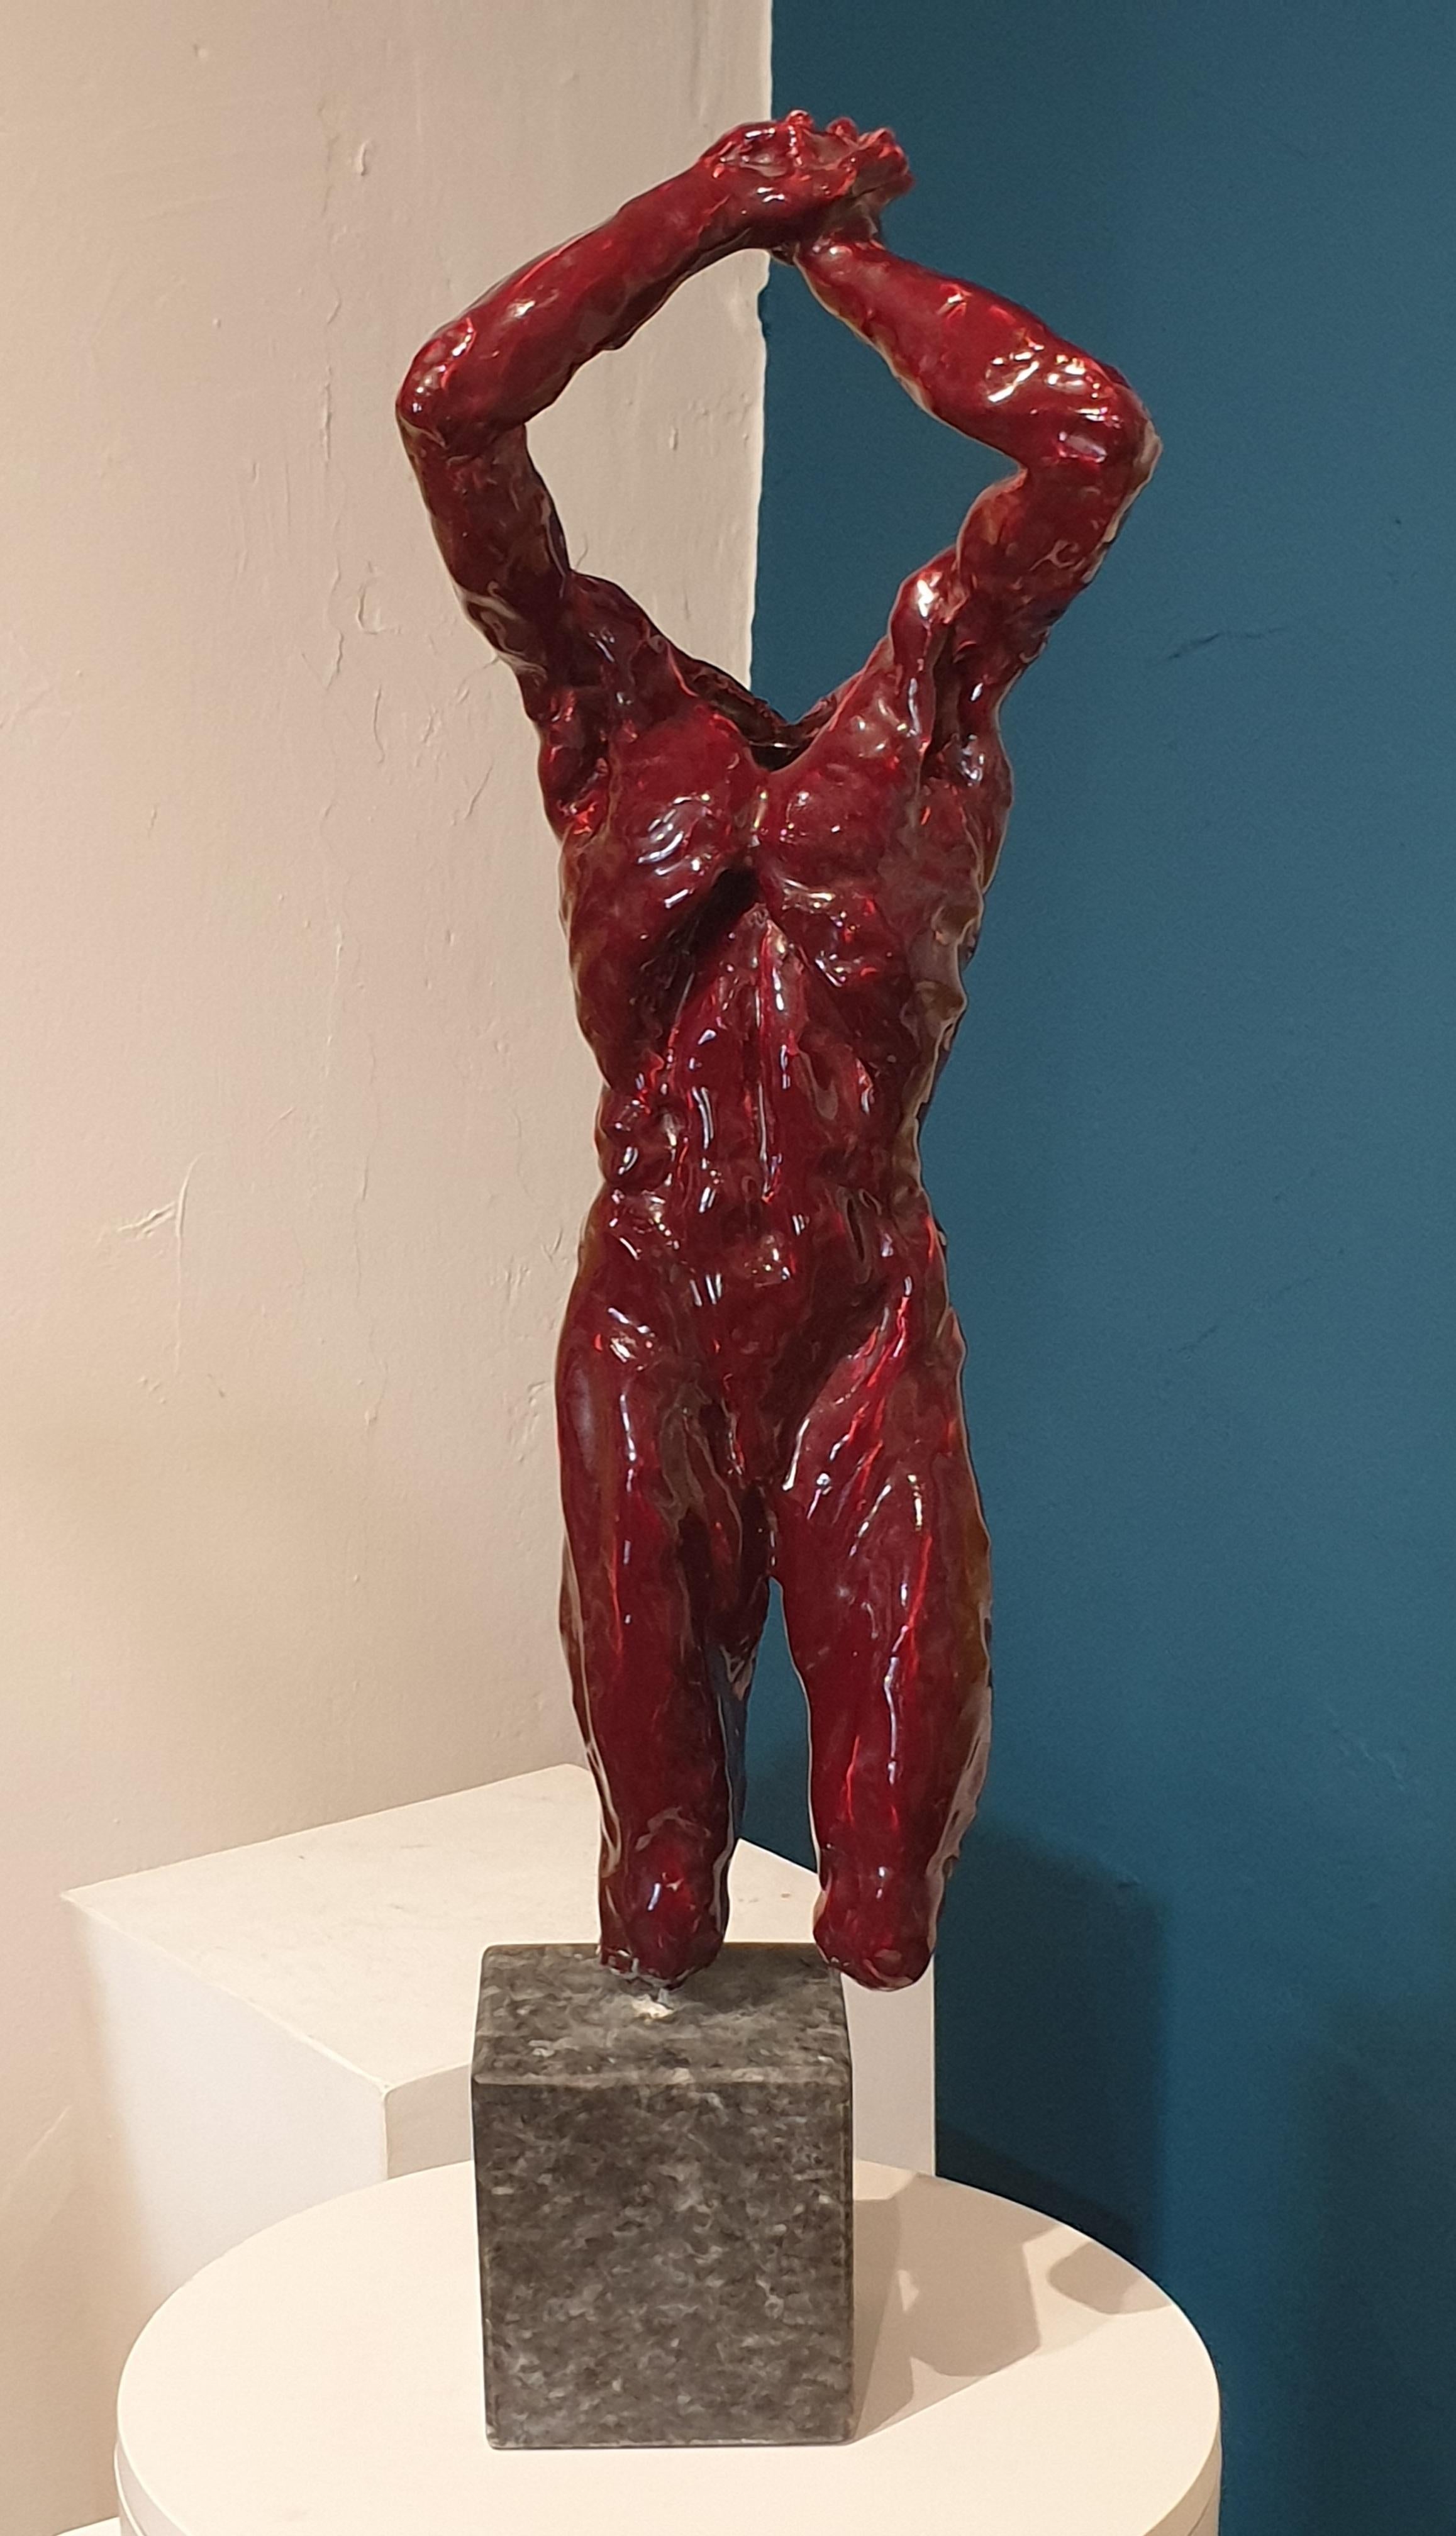 Figure d'homme en céramique du milieu du 20e siècle, en Sang de Bœuf, rouge sang de bœuf, présentée sur une tige en métal et une base en marbre.

La sculpture n'est pas signée, mais elle a été achetée à Nice, en France, dans les années 1970, comme